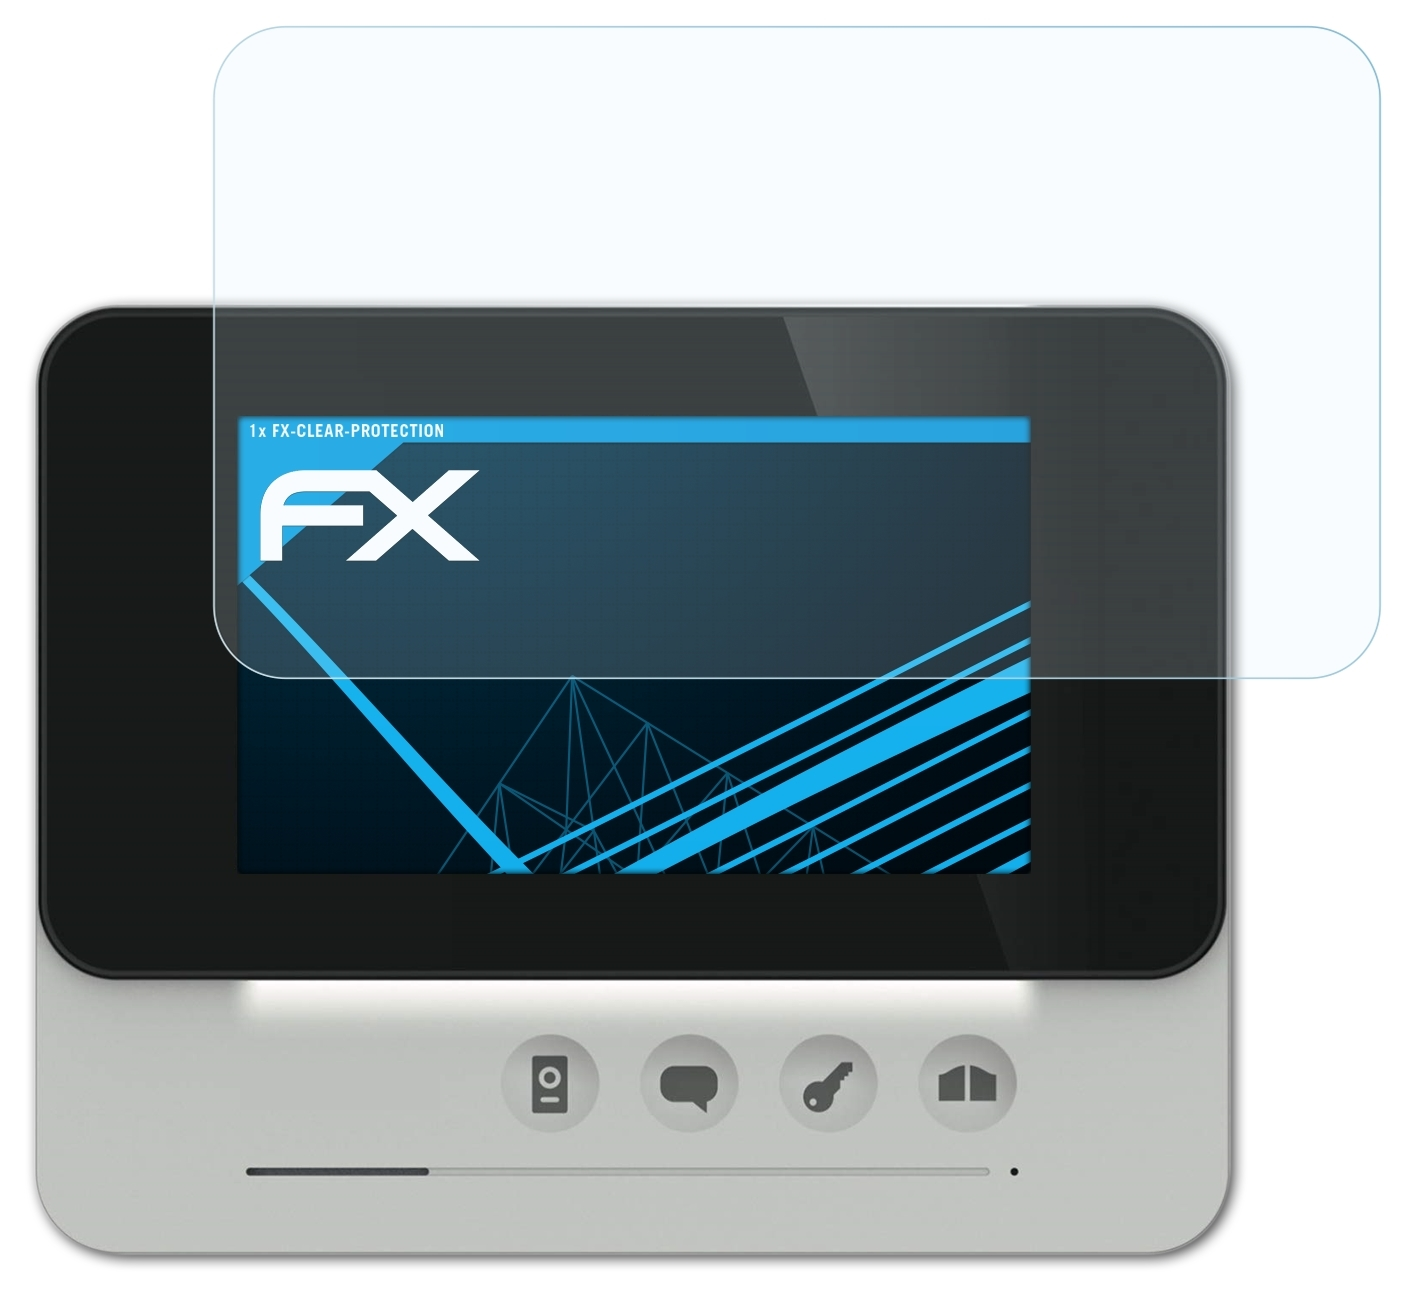 Philips Inch (DES9300DDE/10)) FX-Clear Displayschutz(für WelcomeEye AddCompact ATFOLIX 4.3